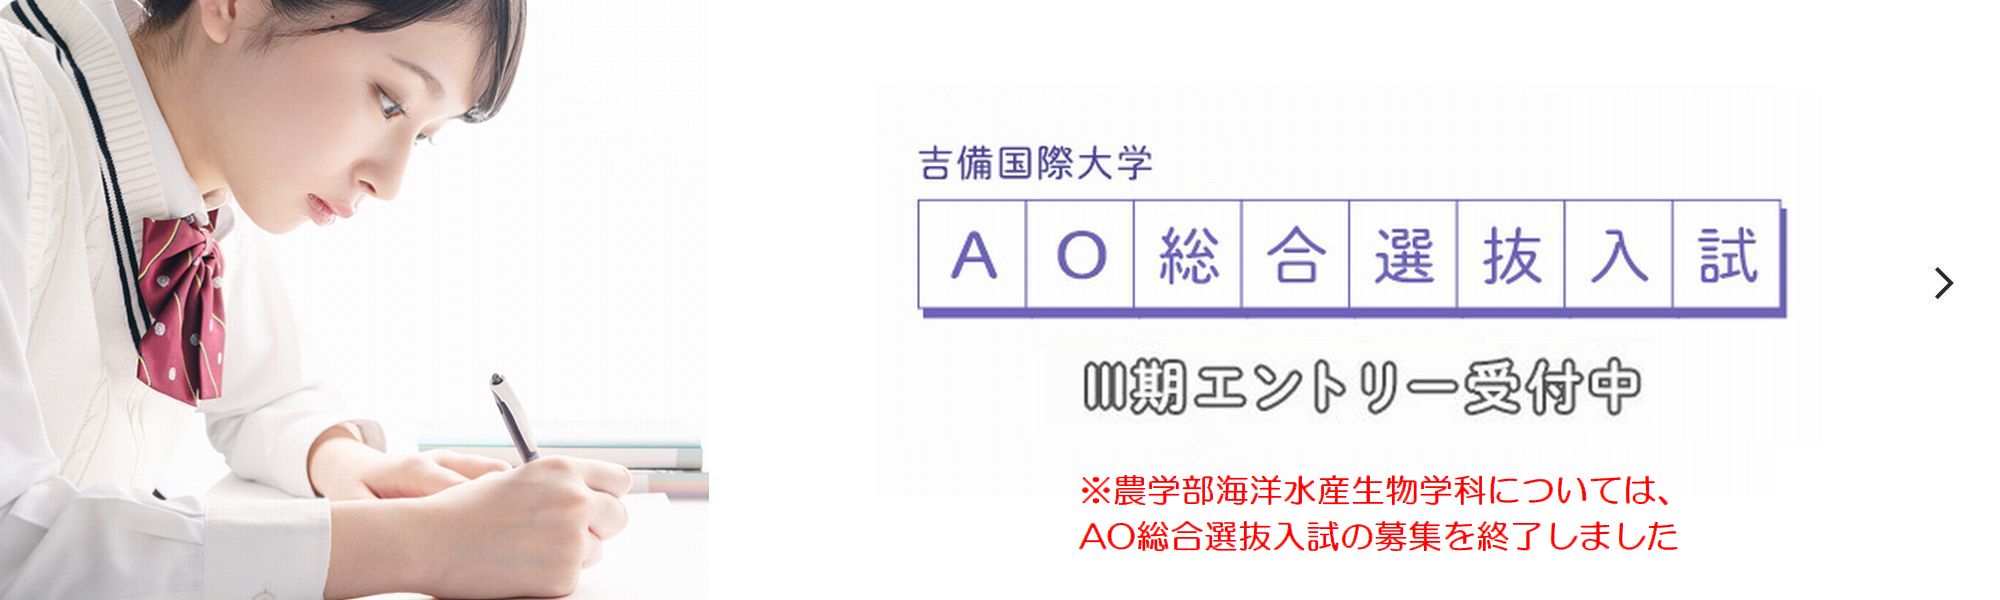 AO総合選抜入試特設サイト